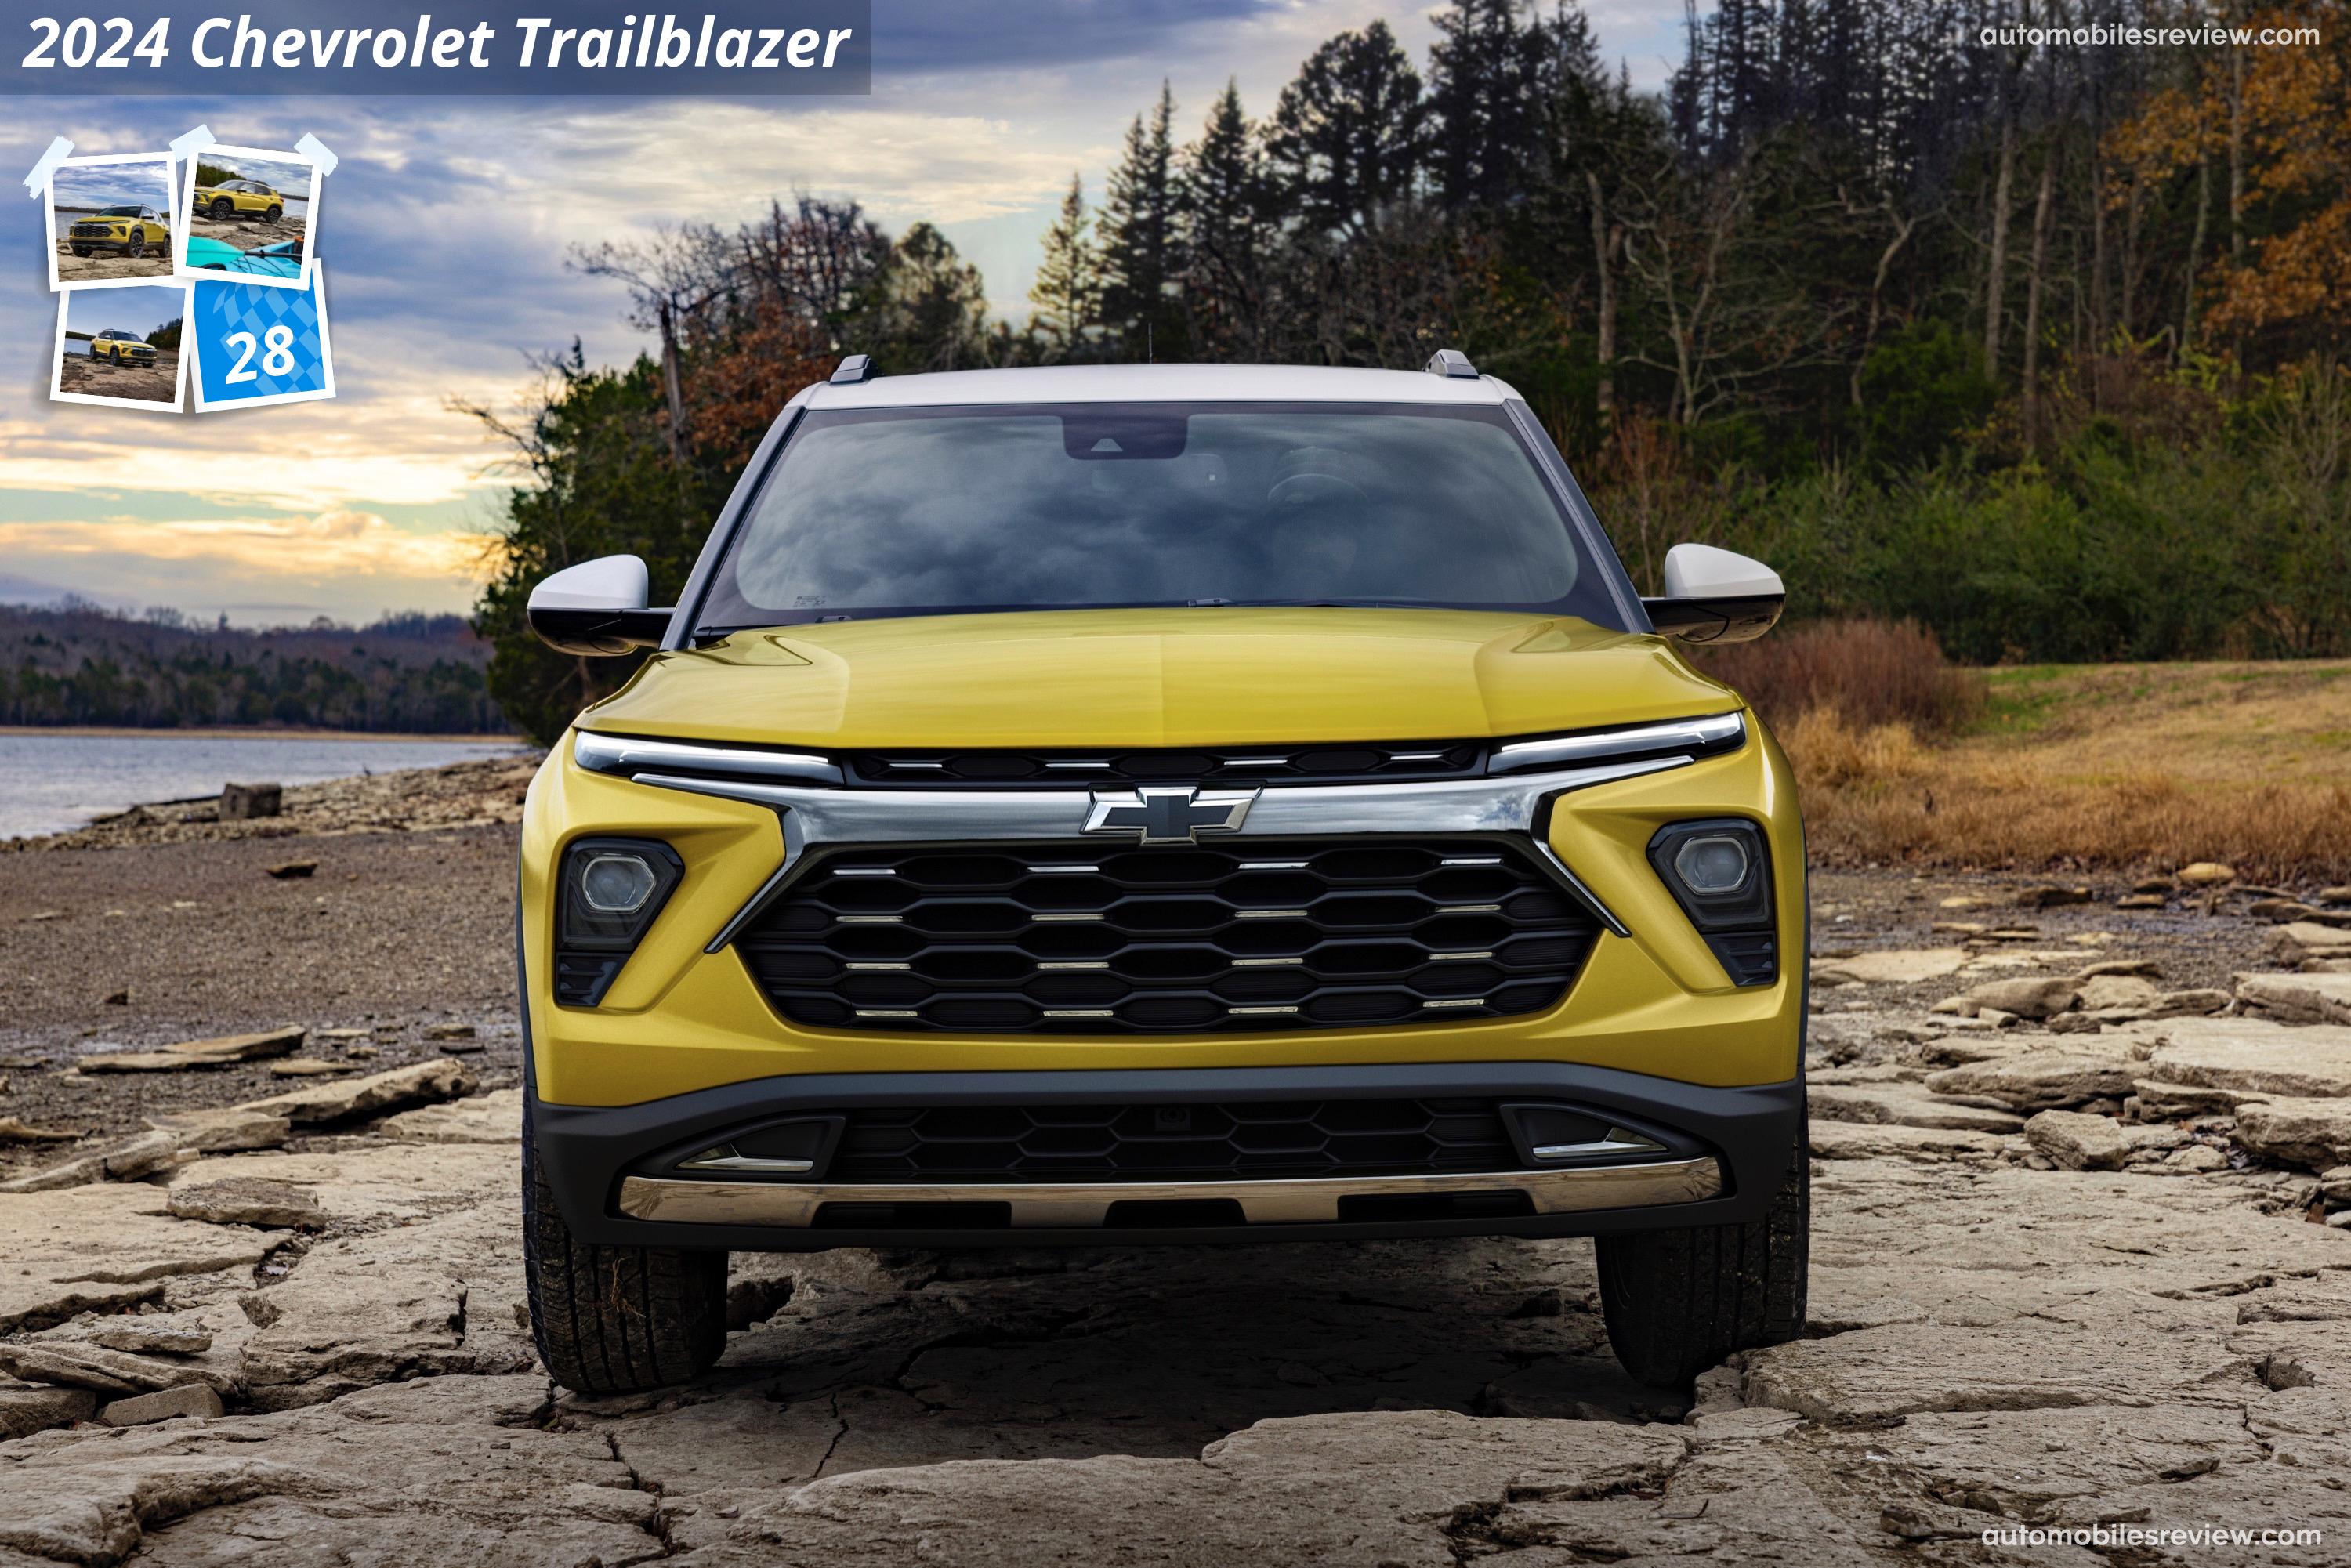 Chevrolet Trailblazer (2024) pictures & information